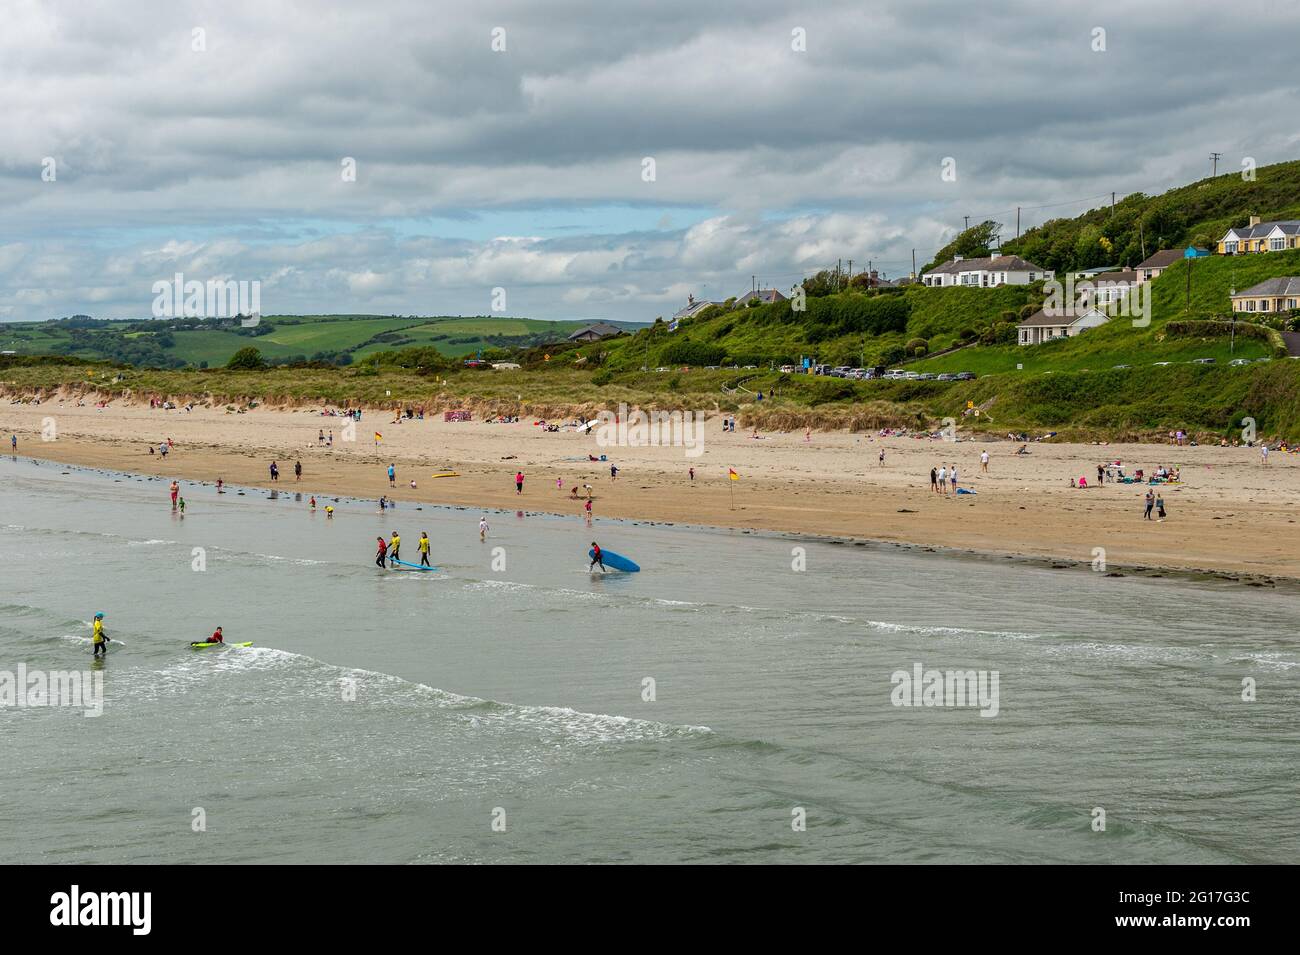 Inchydoney Beach, West Cork, Irland. Juni 2021. Inchydoney Beach war an einem warmen, aber bewölkten Tag sehr voll mit Menschen. Das beste Wetter für das Feiertagswochenende ist morgen, die Temperaturen werden voraussichtlich 20 C erreichen.Quelle: AG News/Alamy Live News Stockfoto